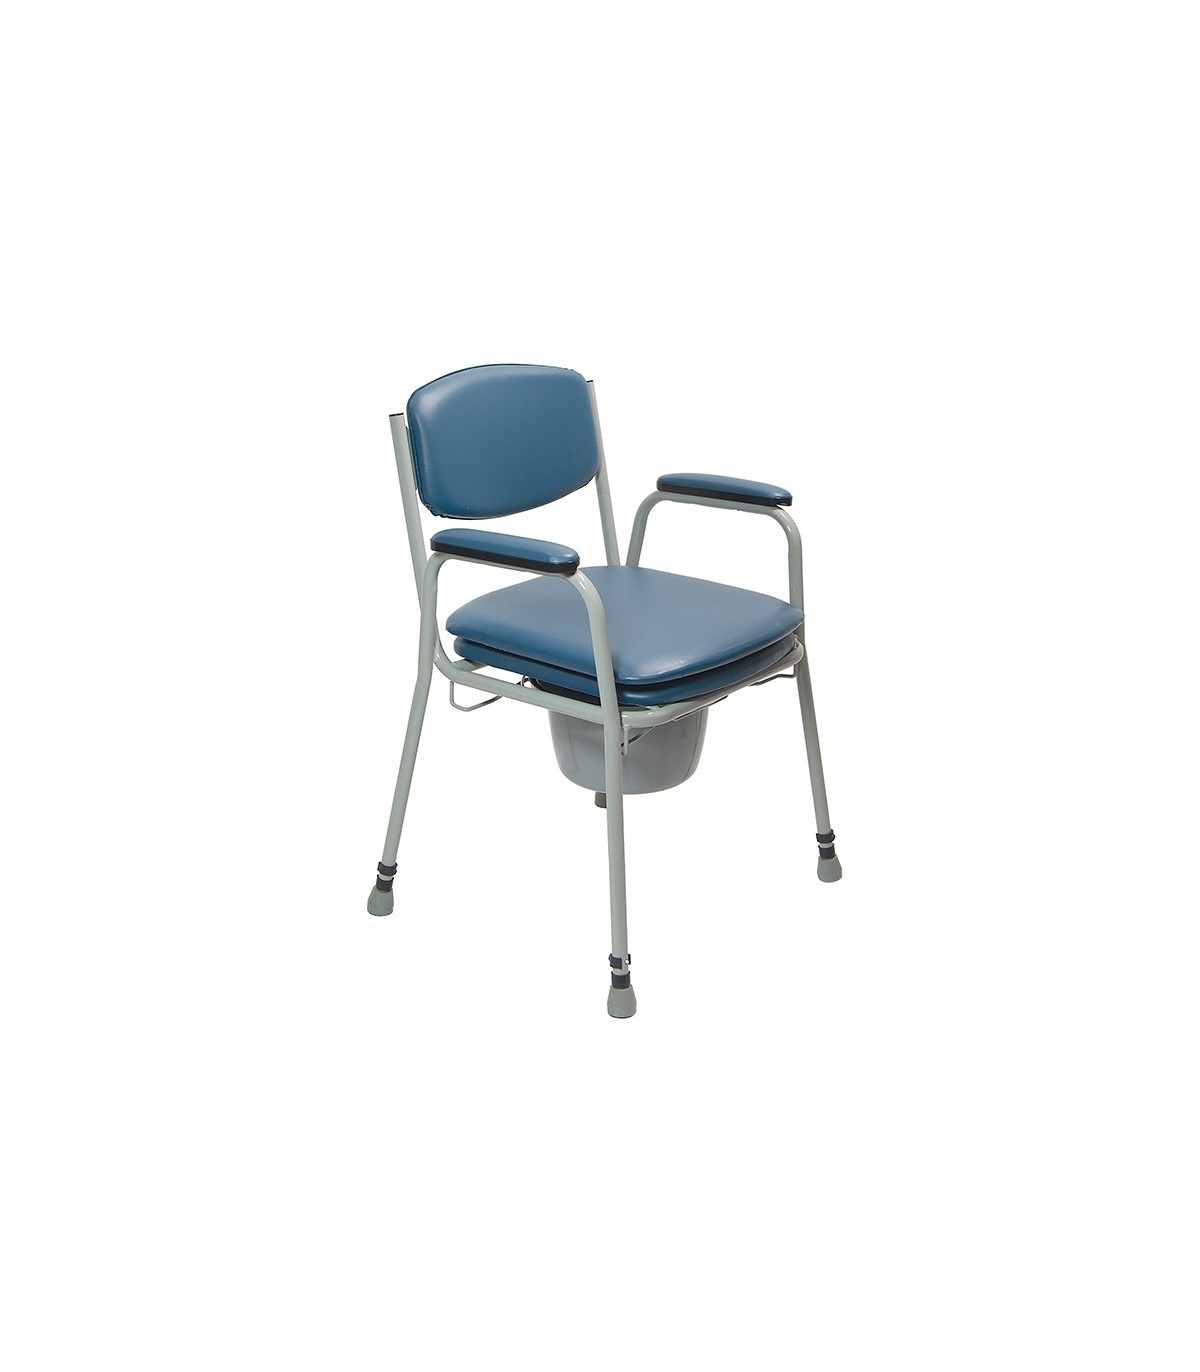 Acheter une chaise percée tout confort - Avec siège de toilette